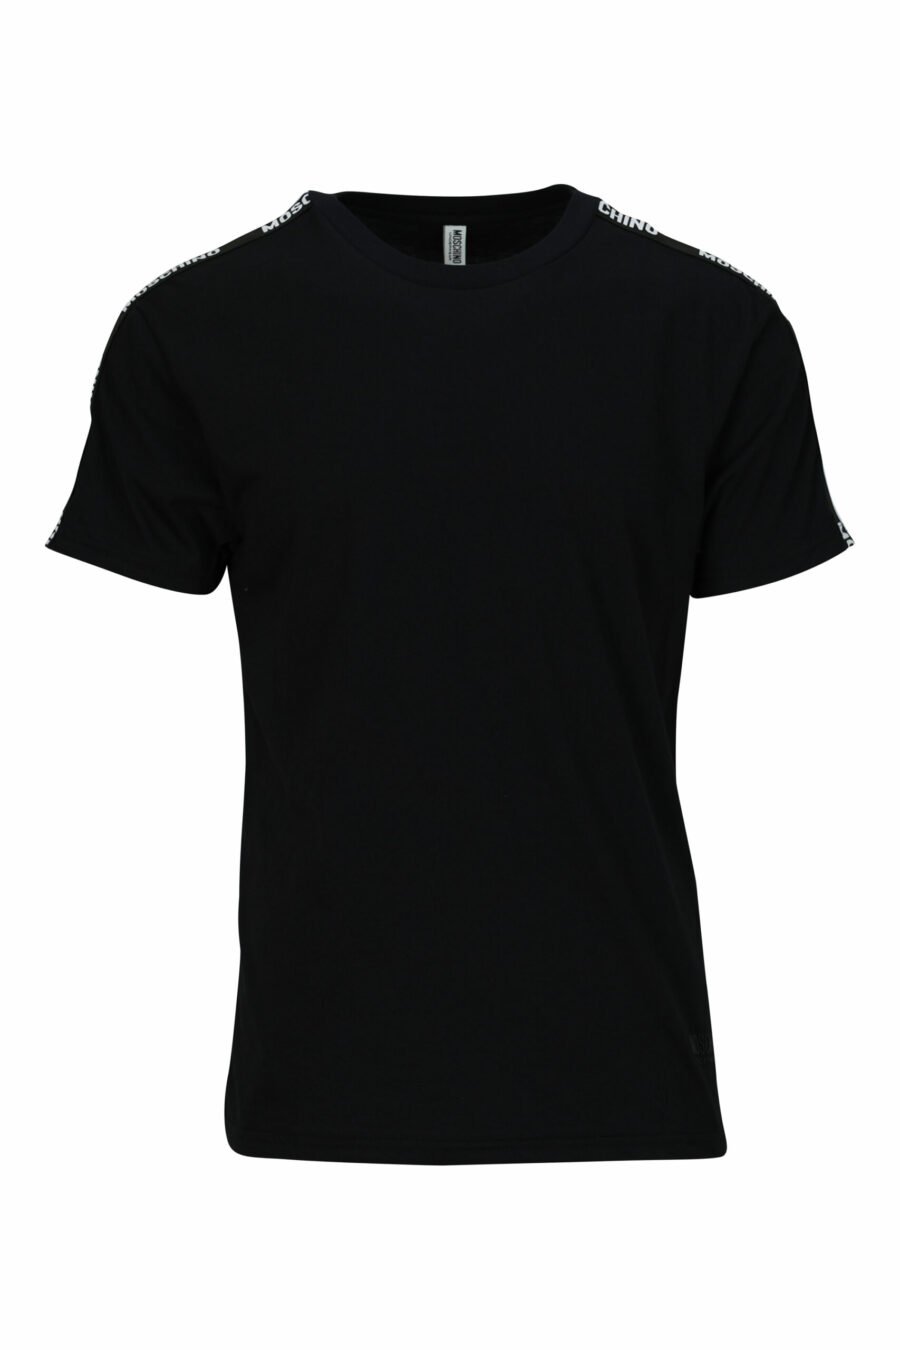 T-shirt preta com mini-logotipo em fita - 667113602967 scaled